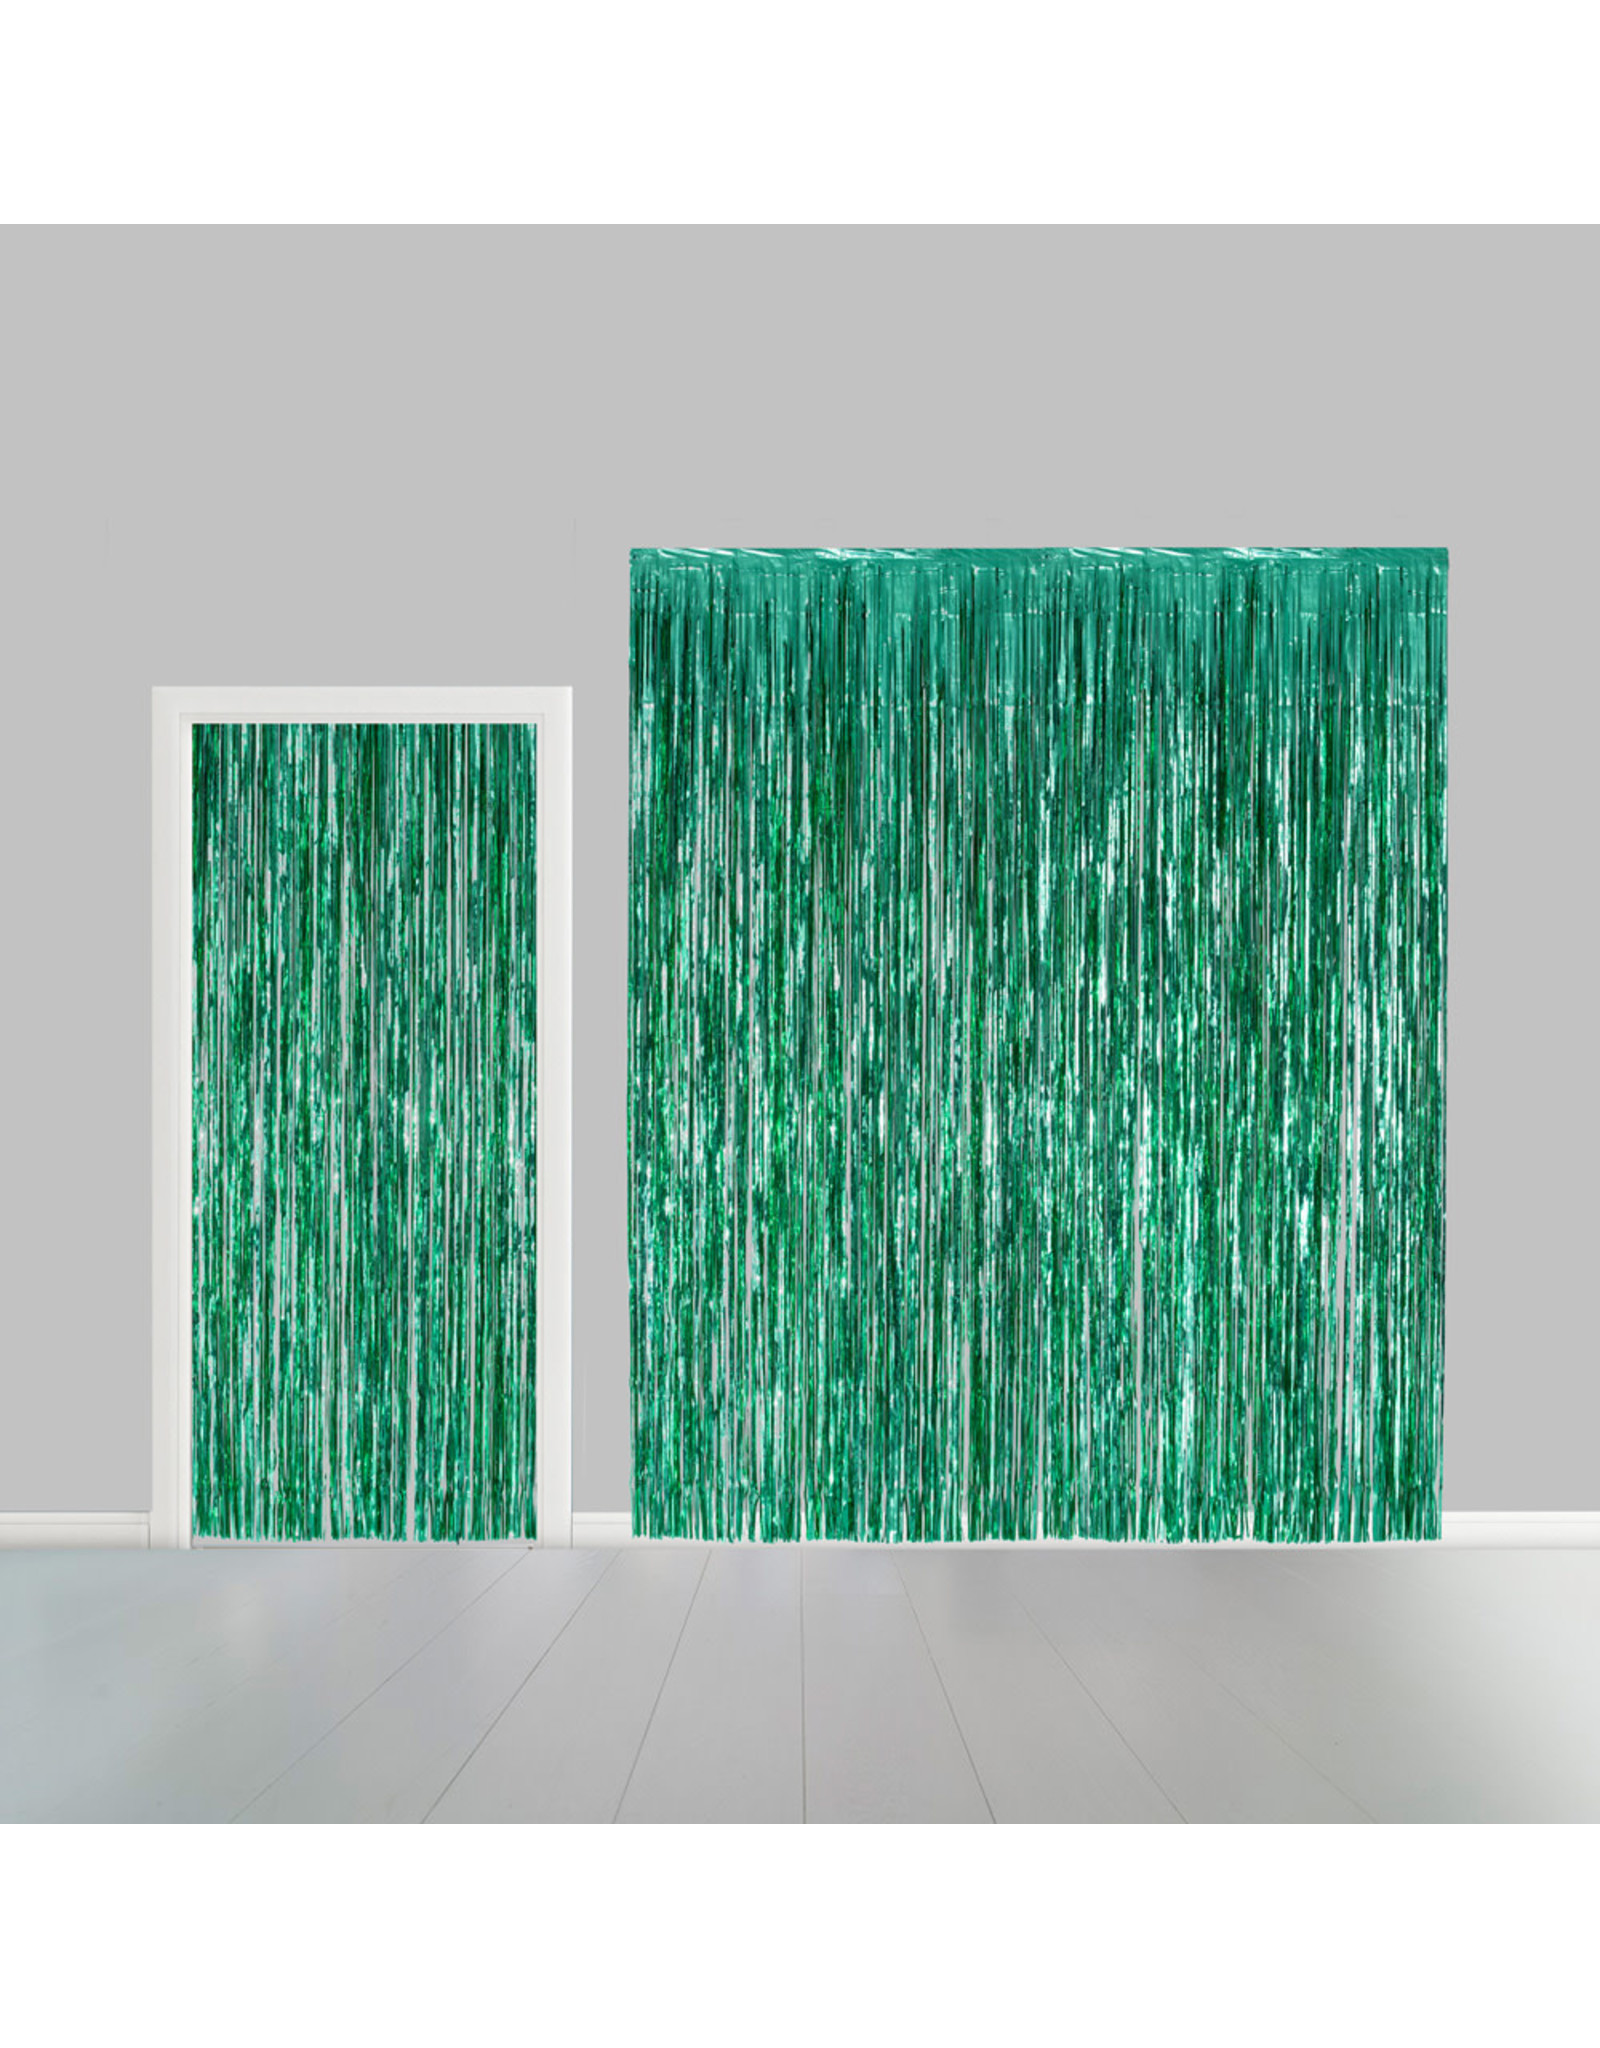 Deurgordijn groen 100 x 240 cm